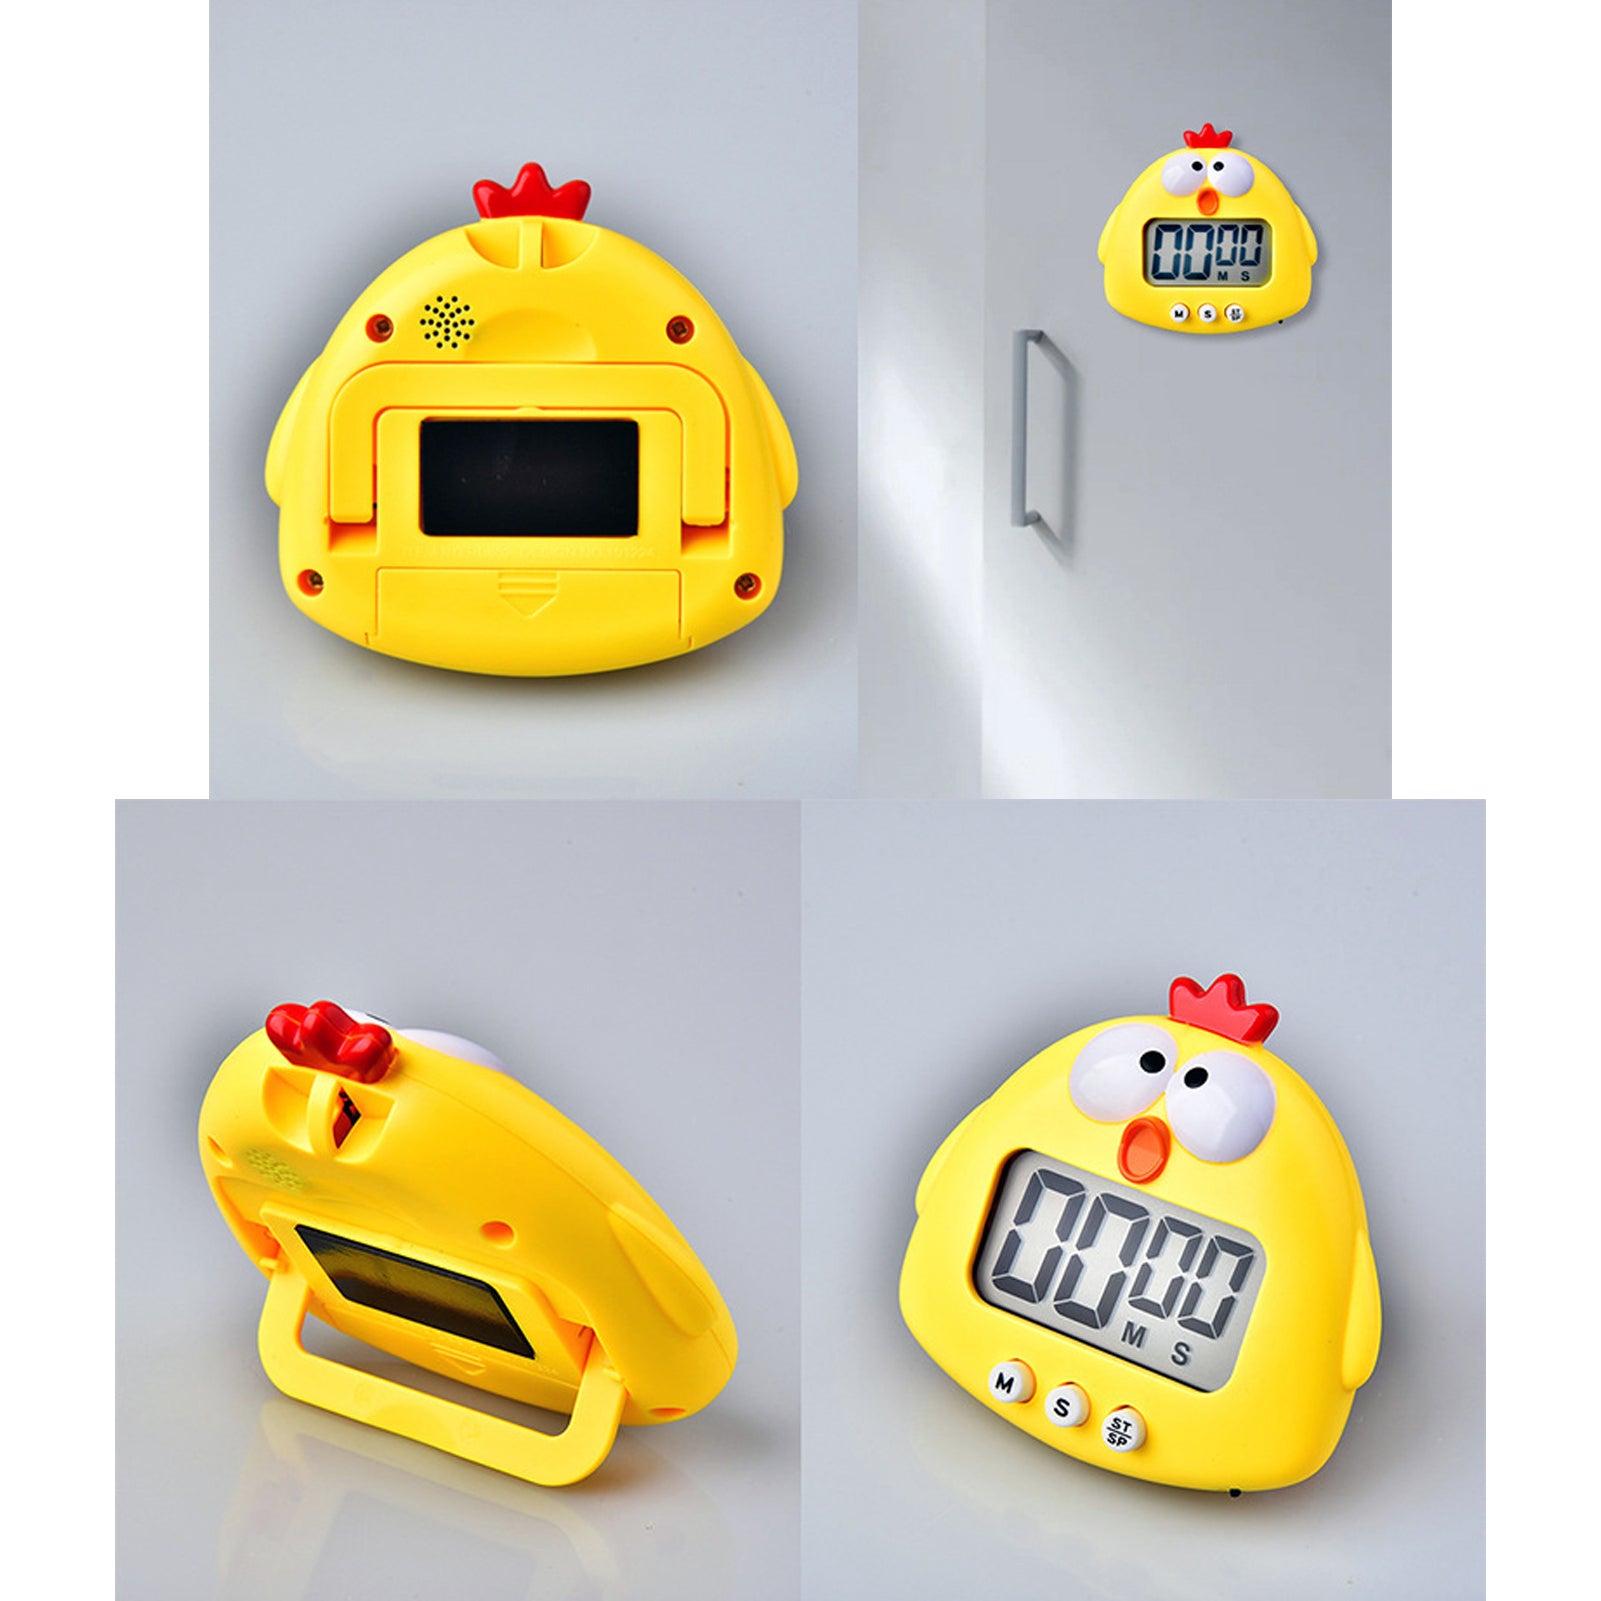 JAMOR 2 Pieces of Chicken Timer Set, Big Digital Loud Alarm, Magnetic –  JAMOR Official Store